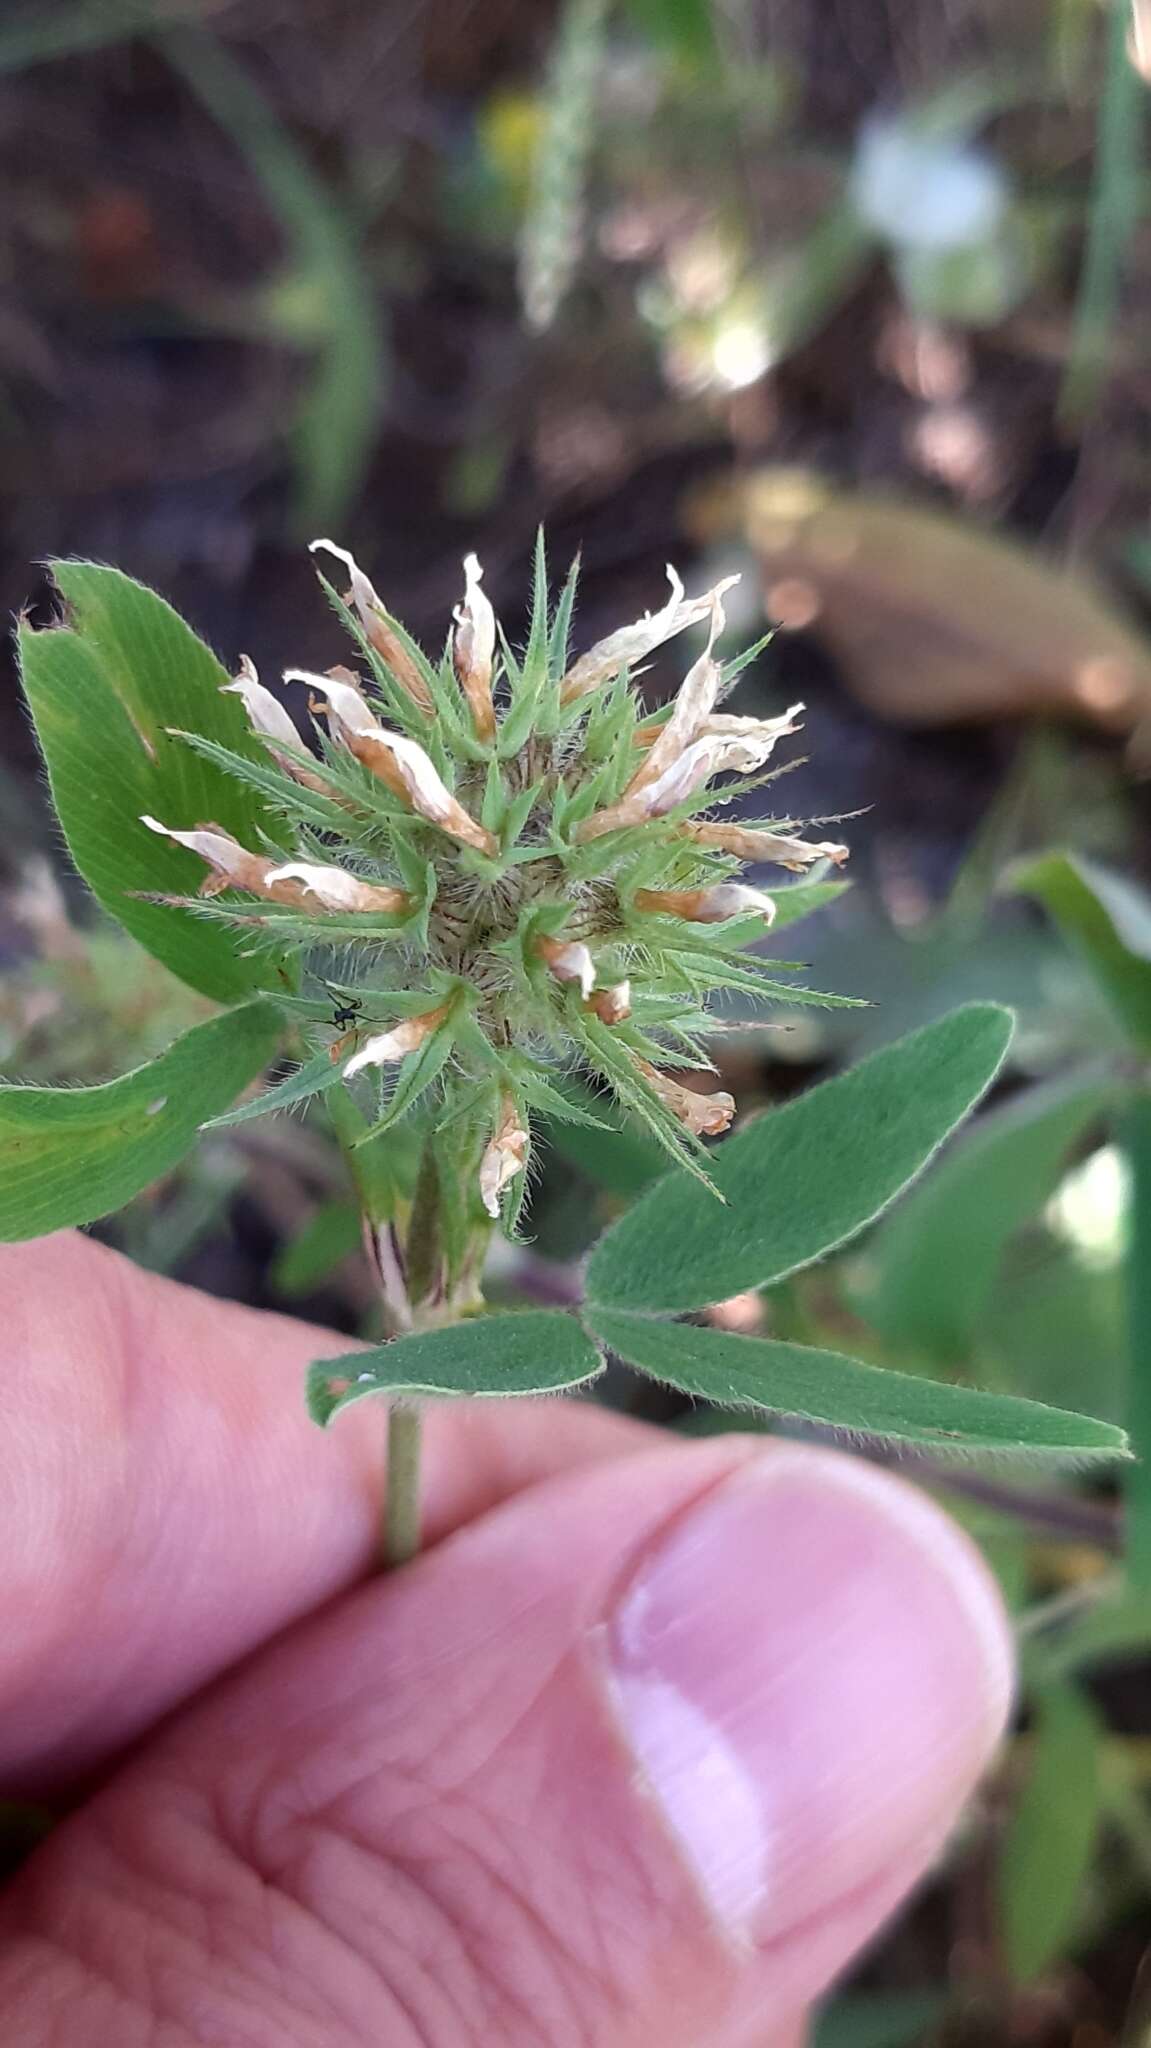 Sivun Trifolium squarrosum L. kuva